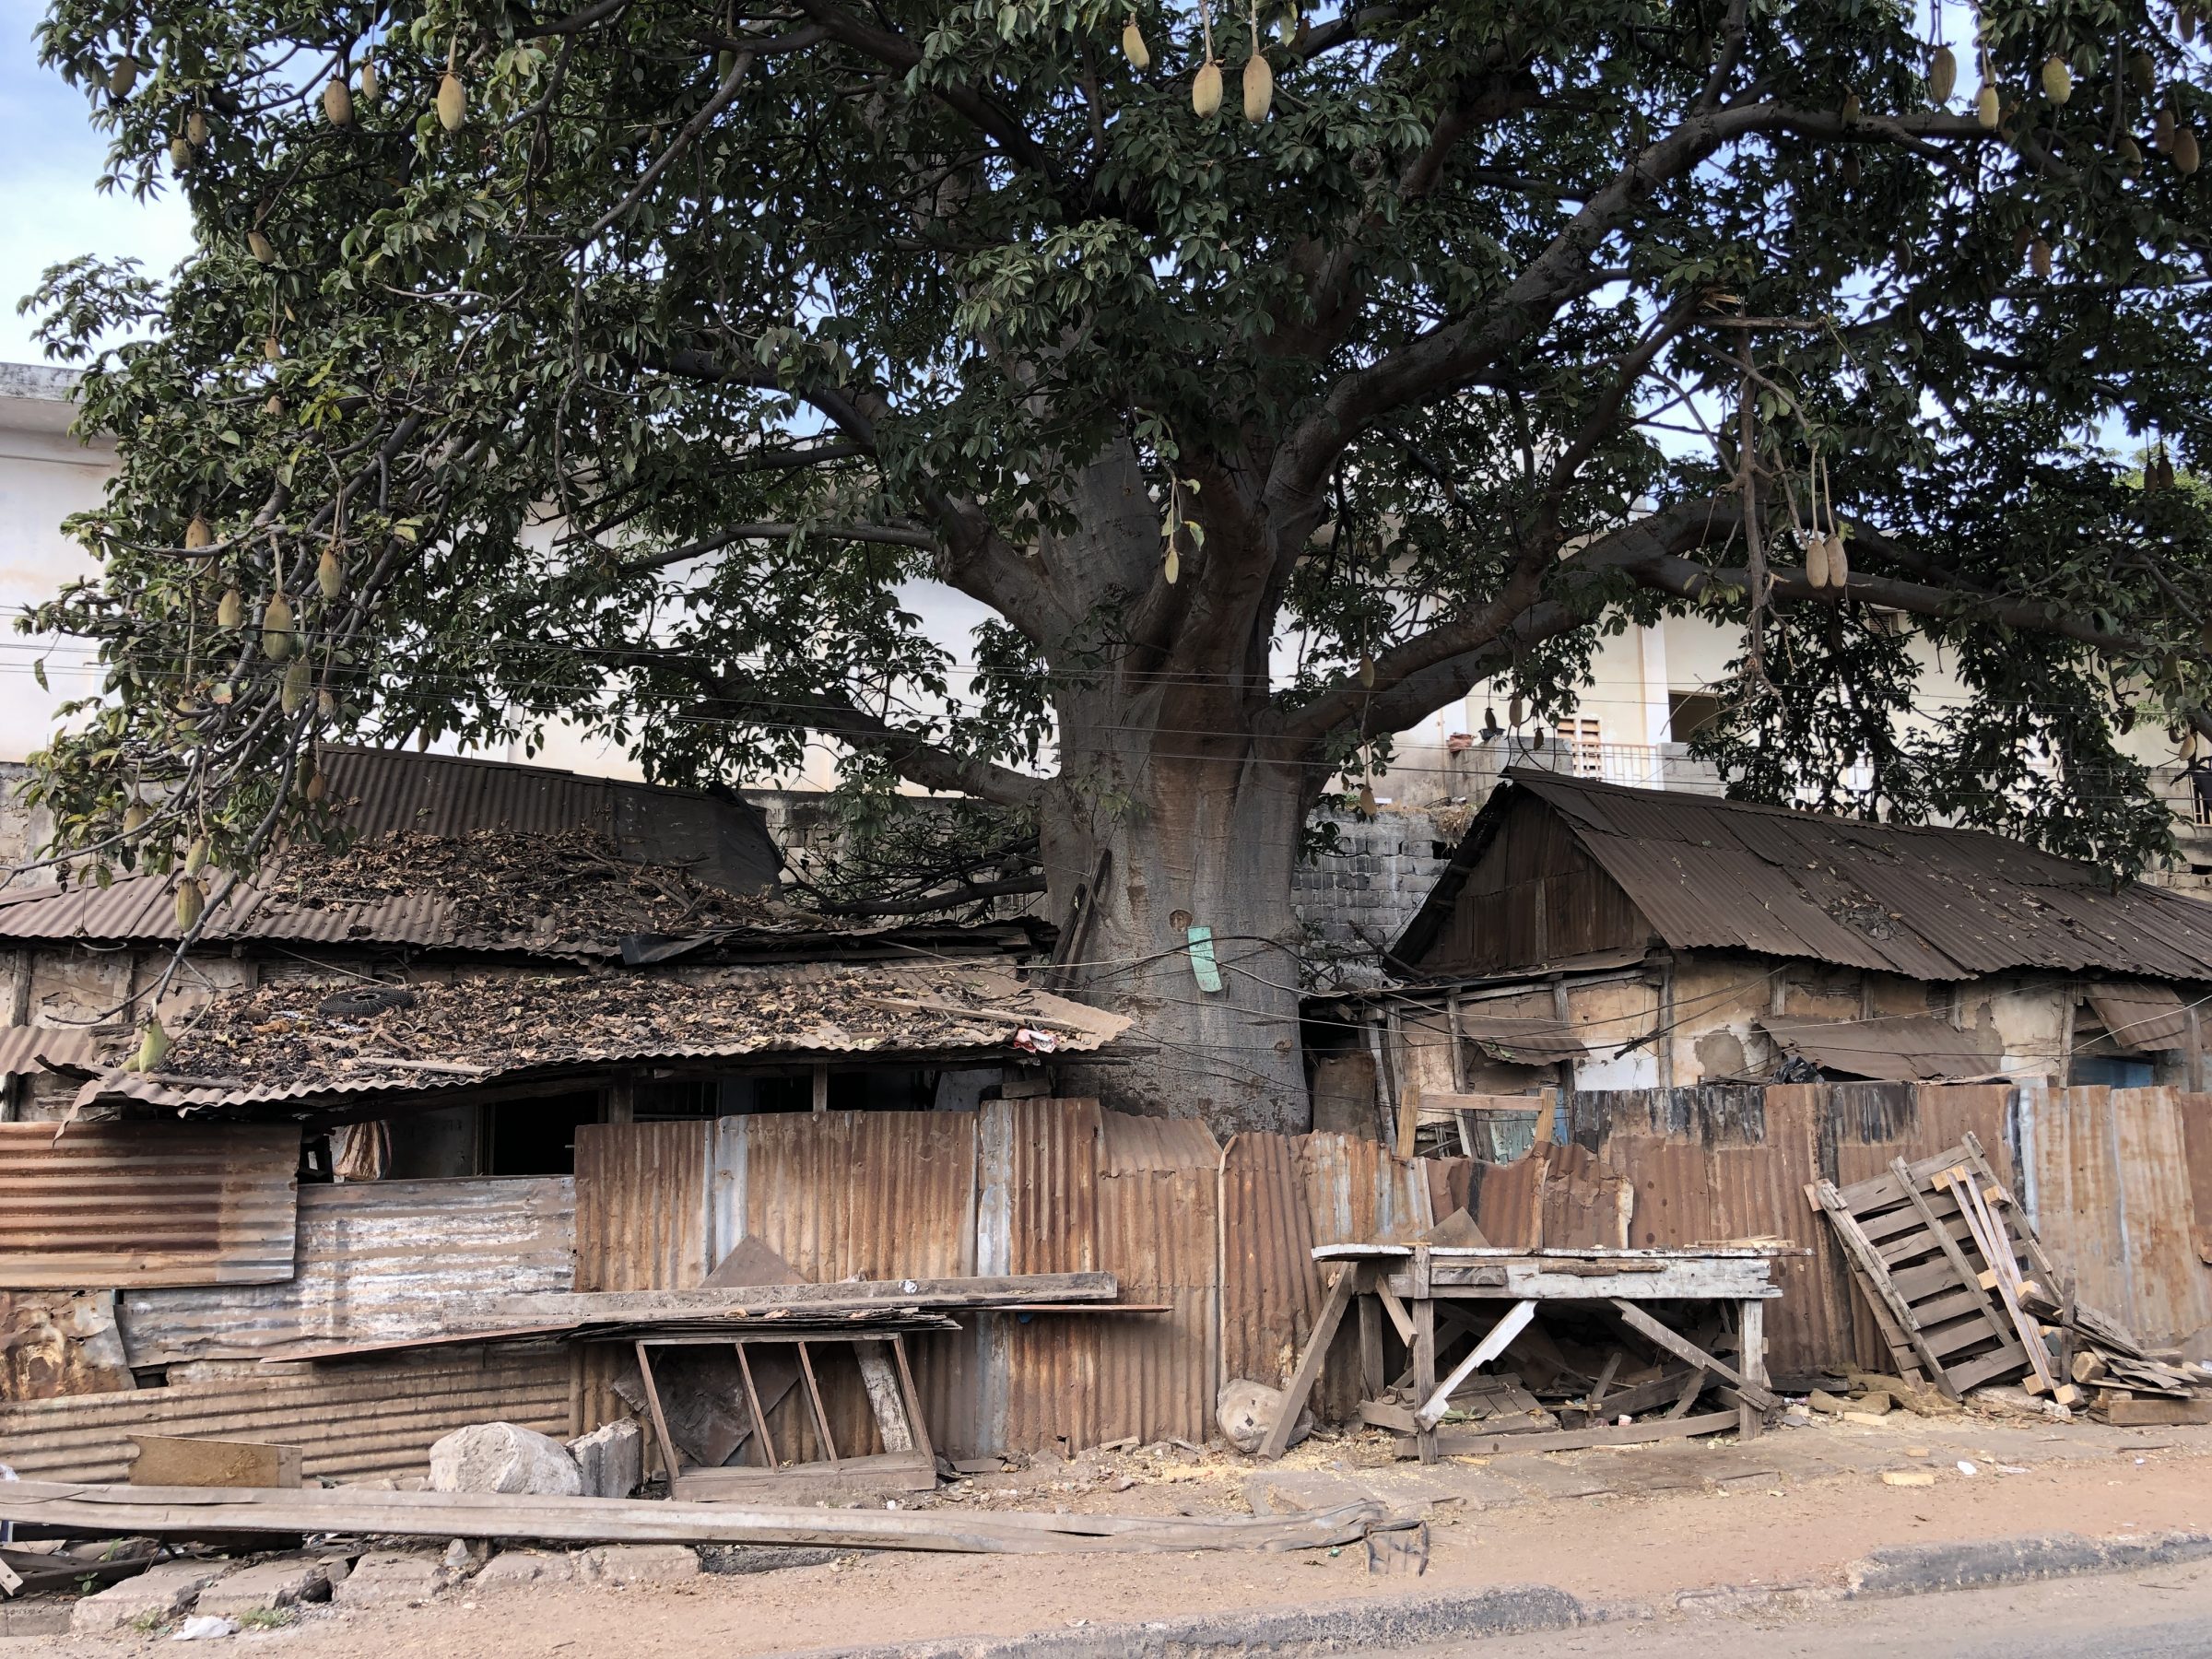 Ingebouwde baobab boom in Gambia